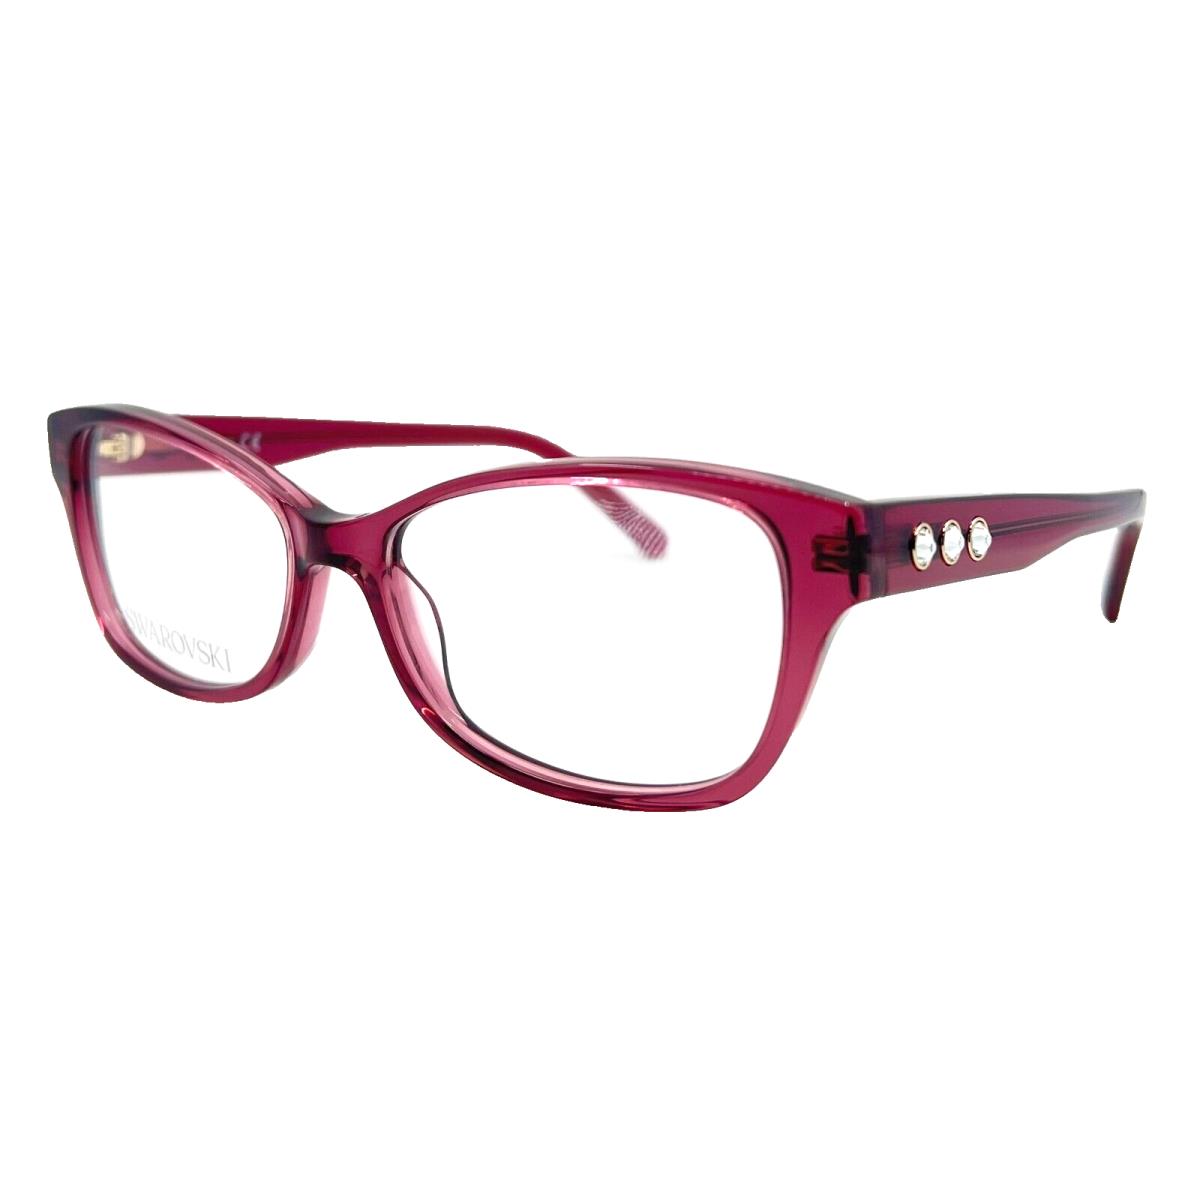 Swarovski - SK5430 069 53/15/140 - Berry - Eyeglasses Case